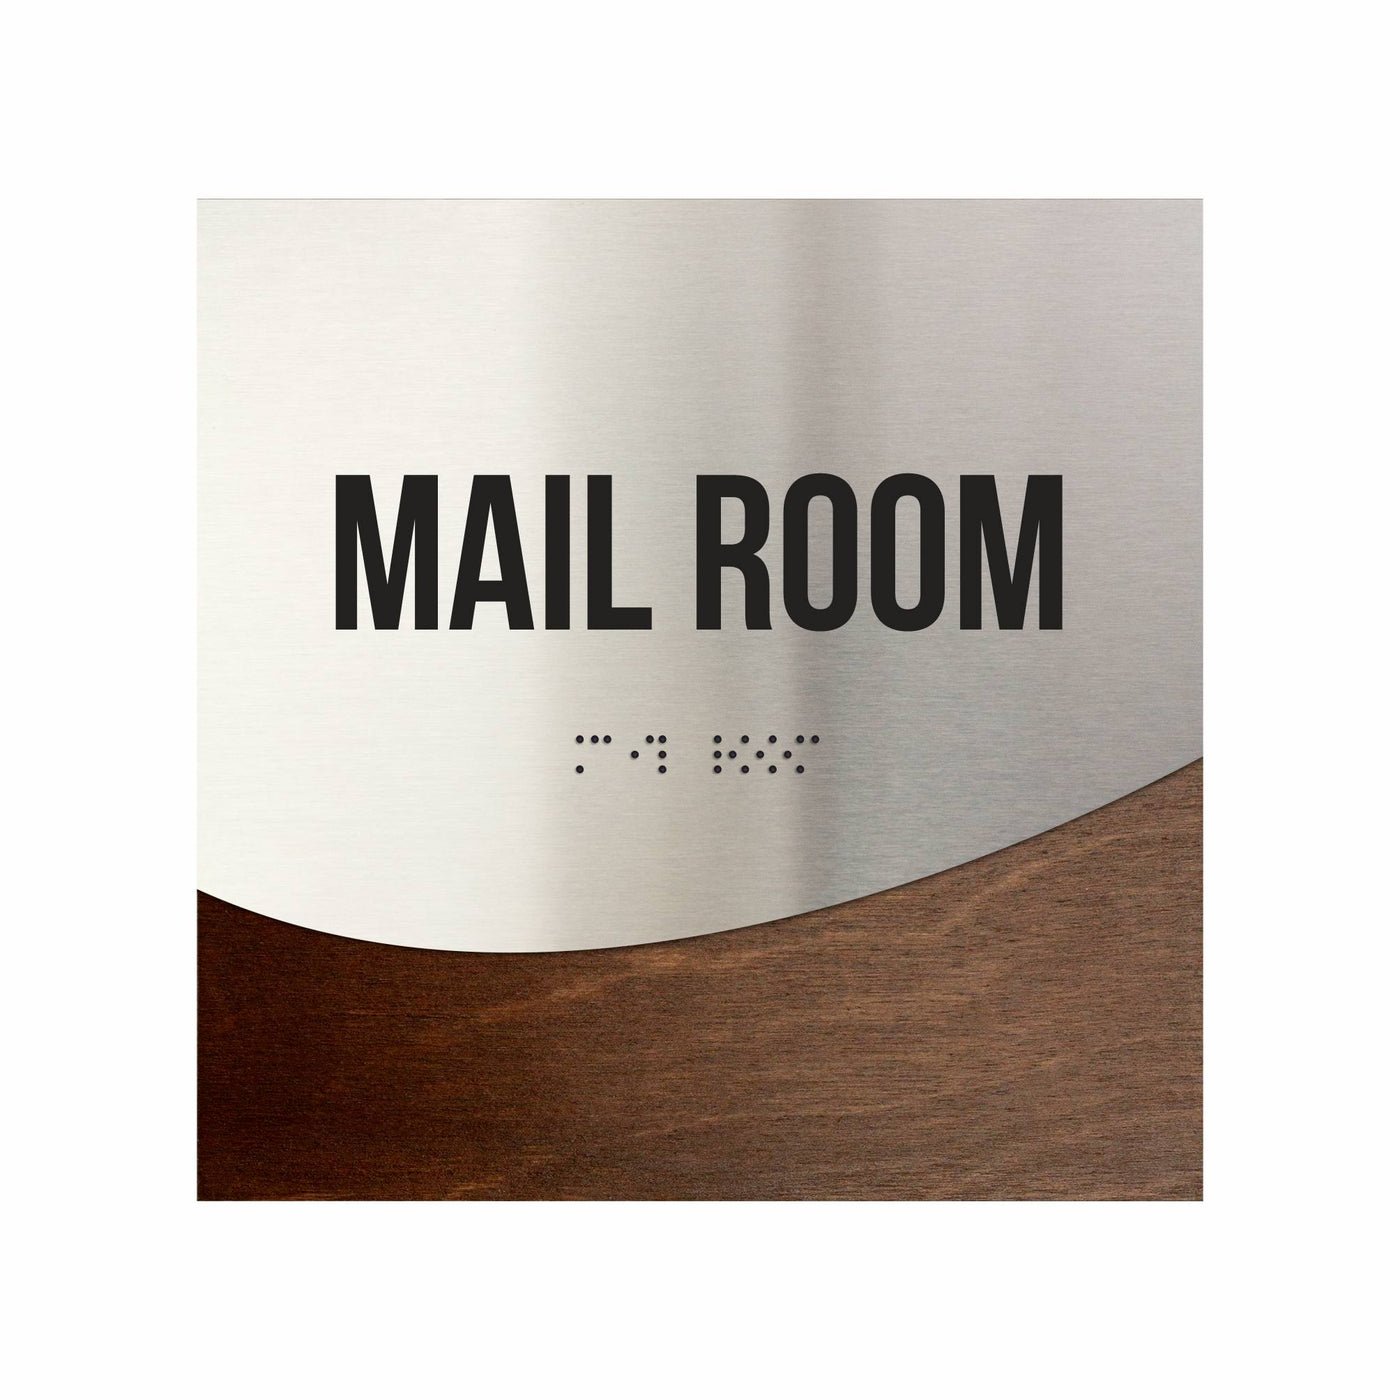 Mail Room Door Sign - Stainless Steel & Wood Door Plate "Jure" Design